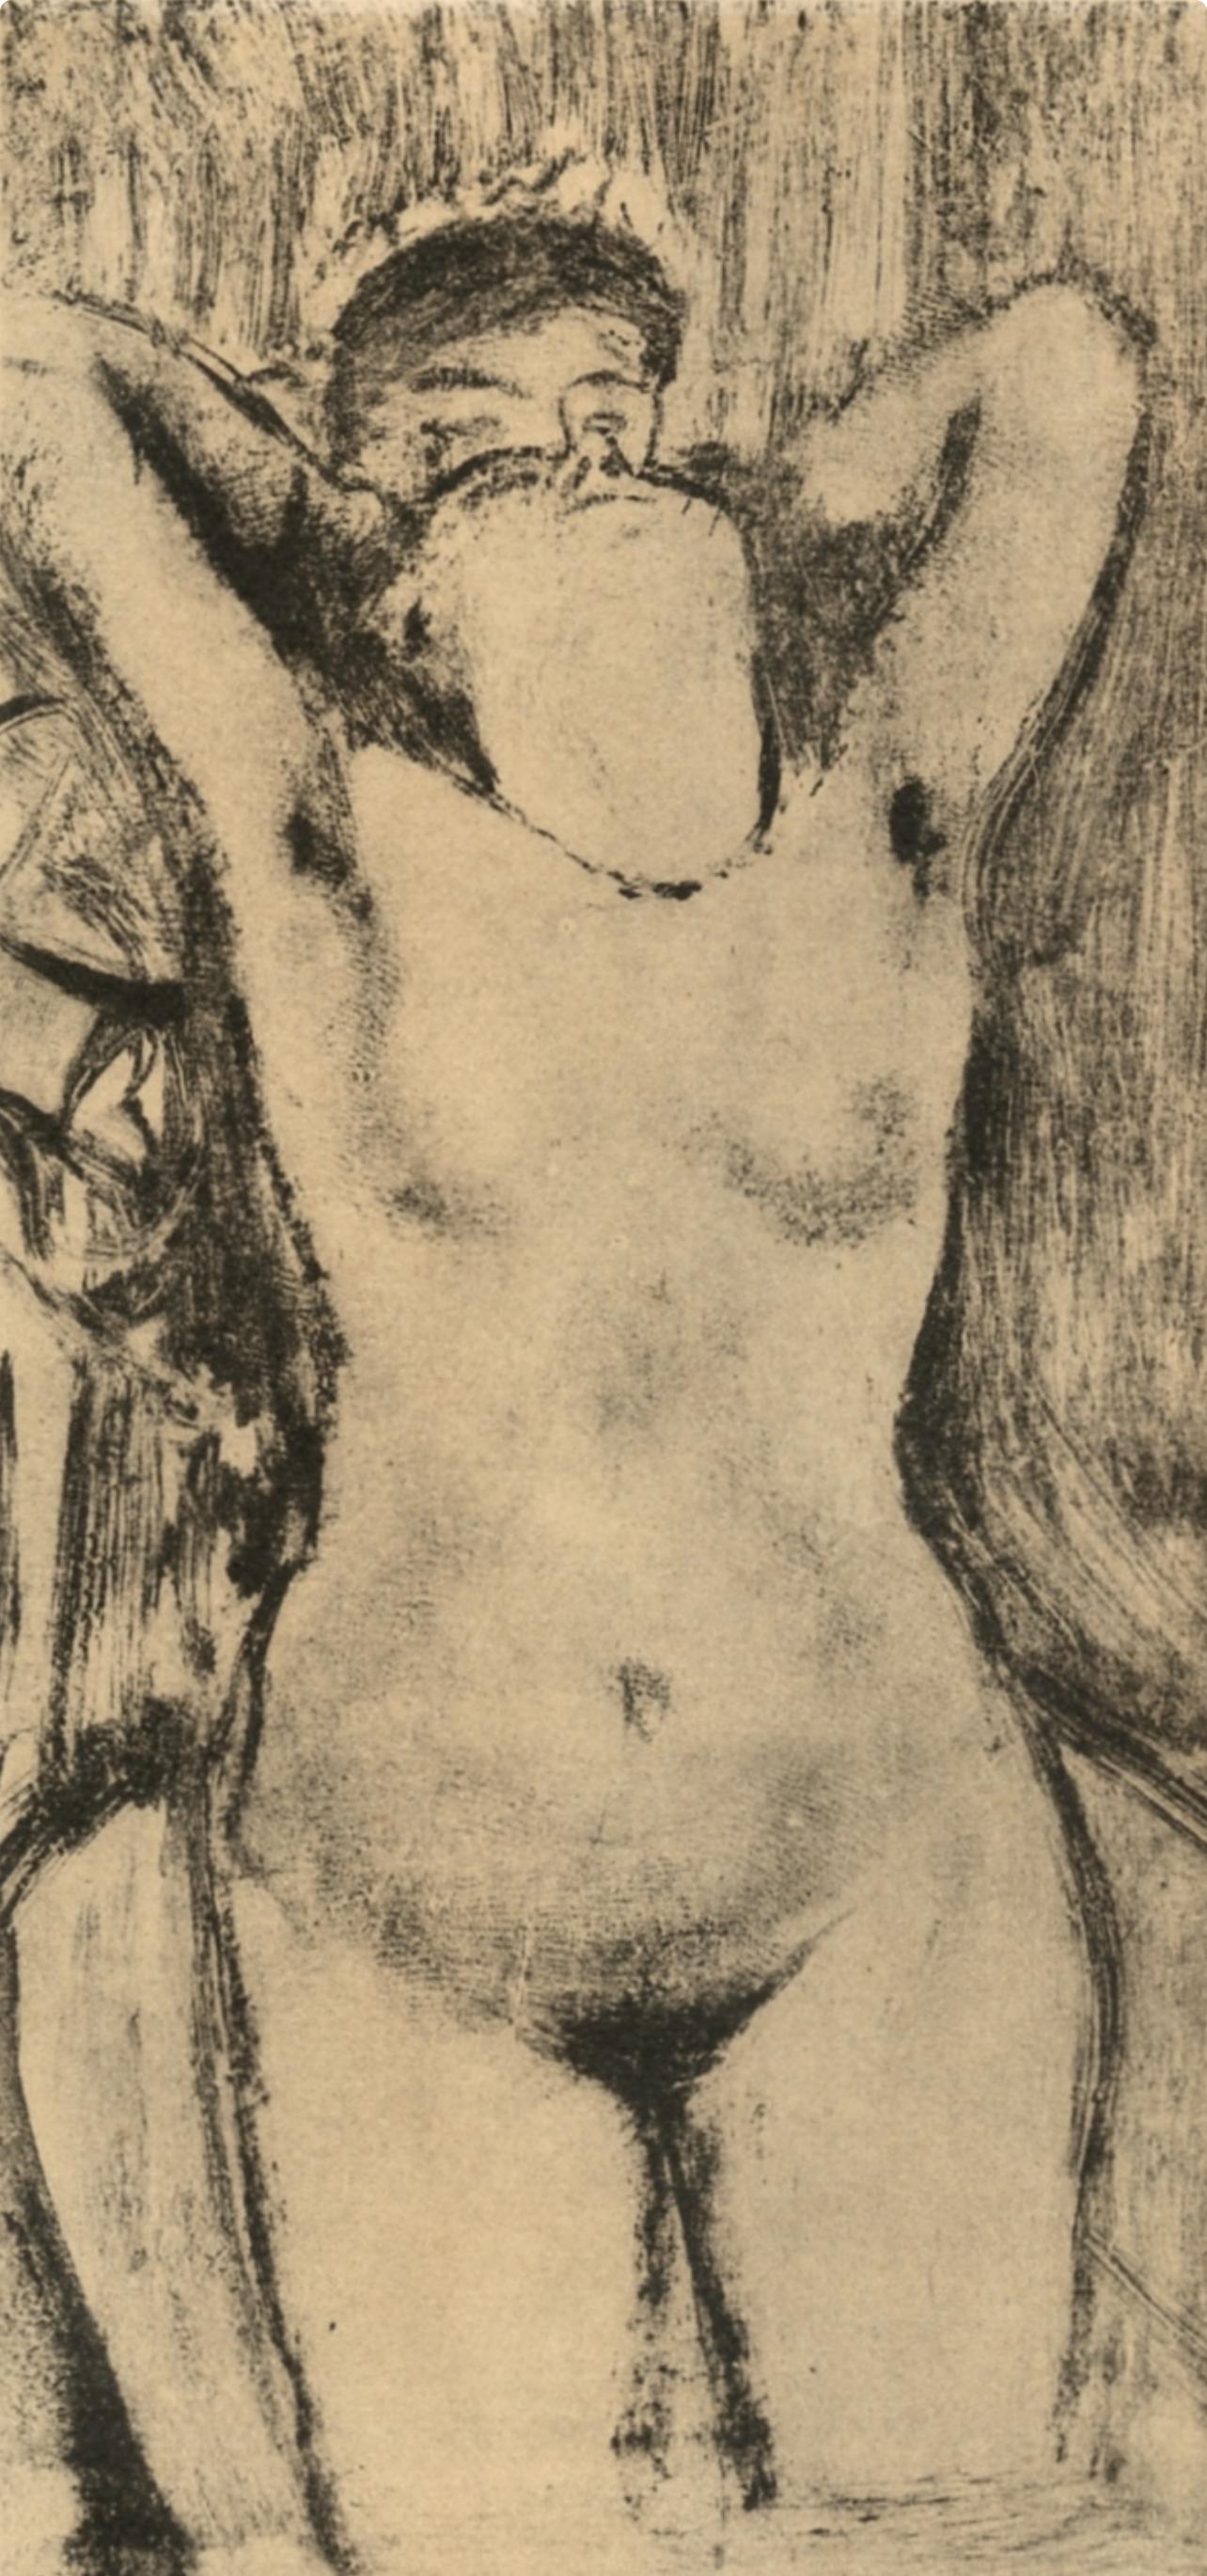 Degas, Femme debout dans une Baignoire, Les Monotypes (after) - Print by Edgar Degas